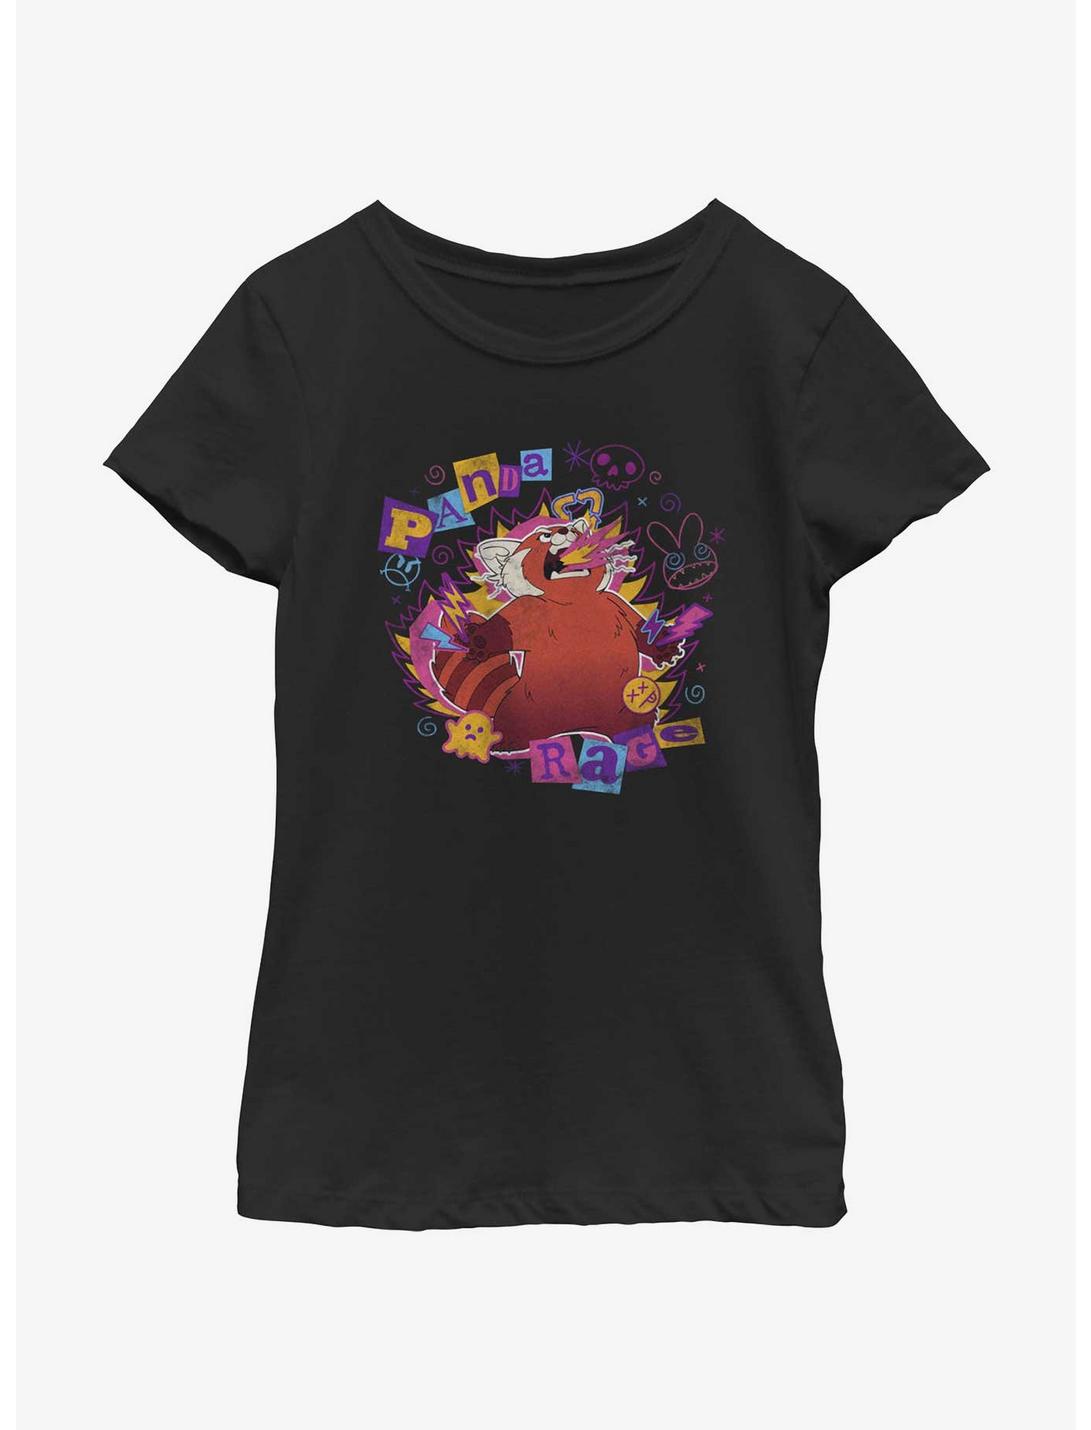 Disney Pixar Turning Red Panda Rage Doodles Youth Girls T-Shirt, BLACK, hi-res